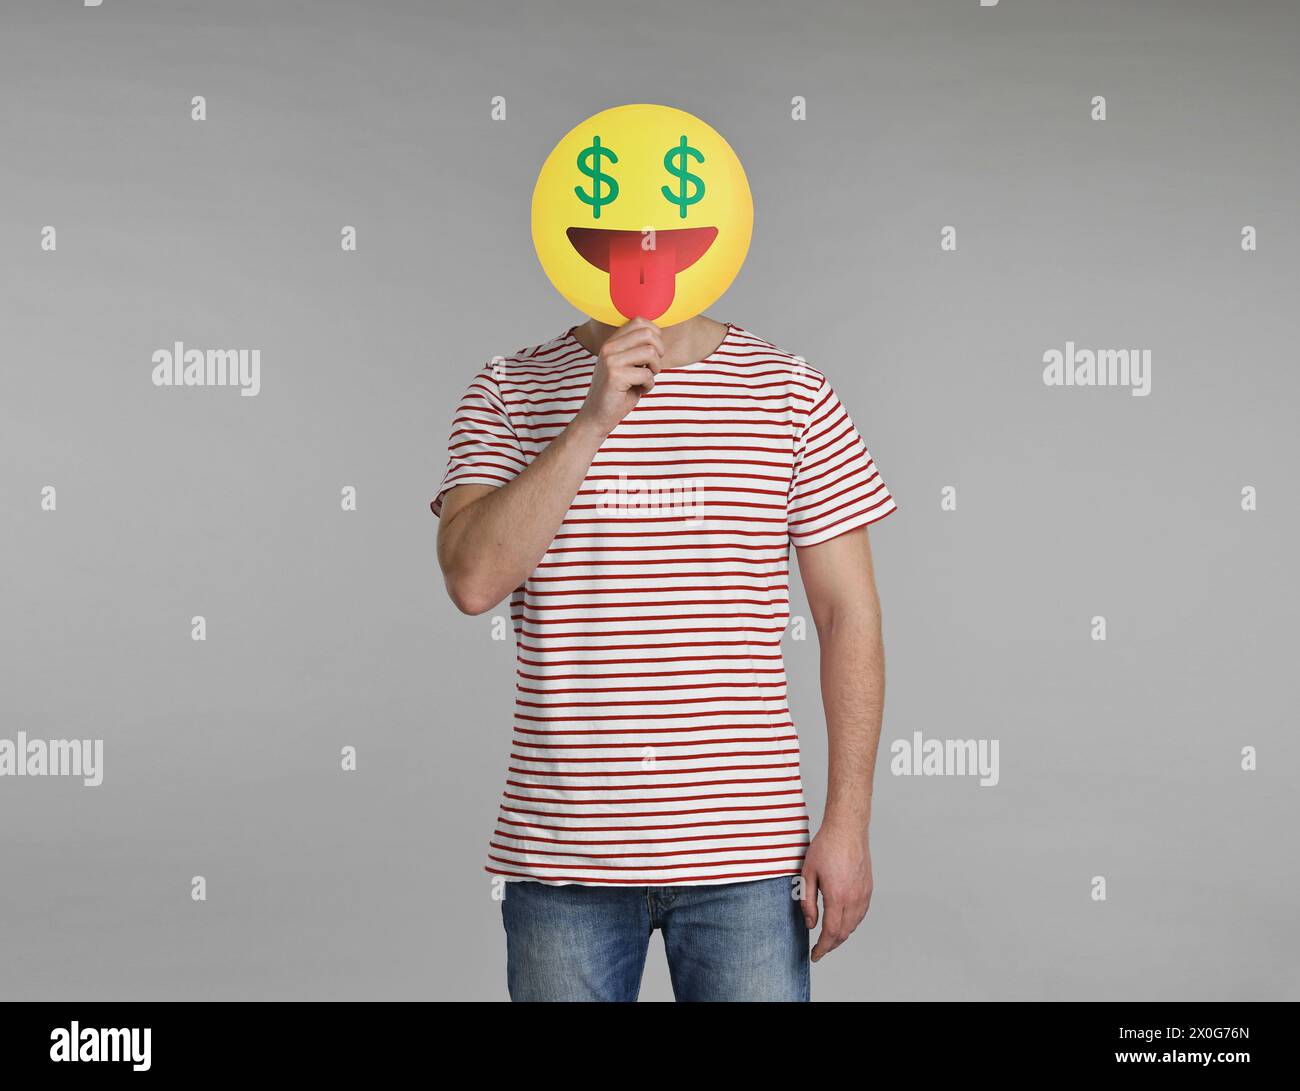 Homme tenant une émoticône avec des signes dollar au lieu des yeux sur fond gris Banque D'Images